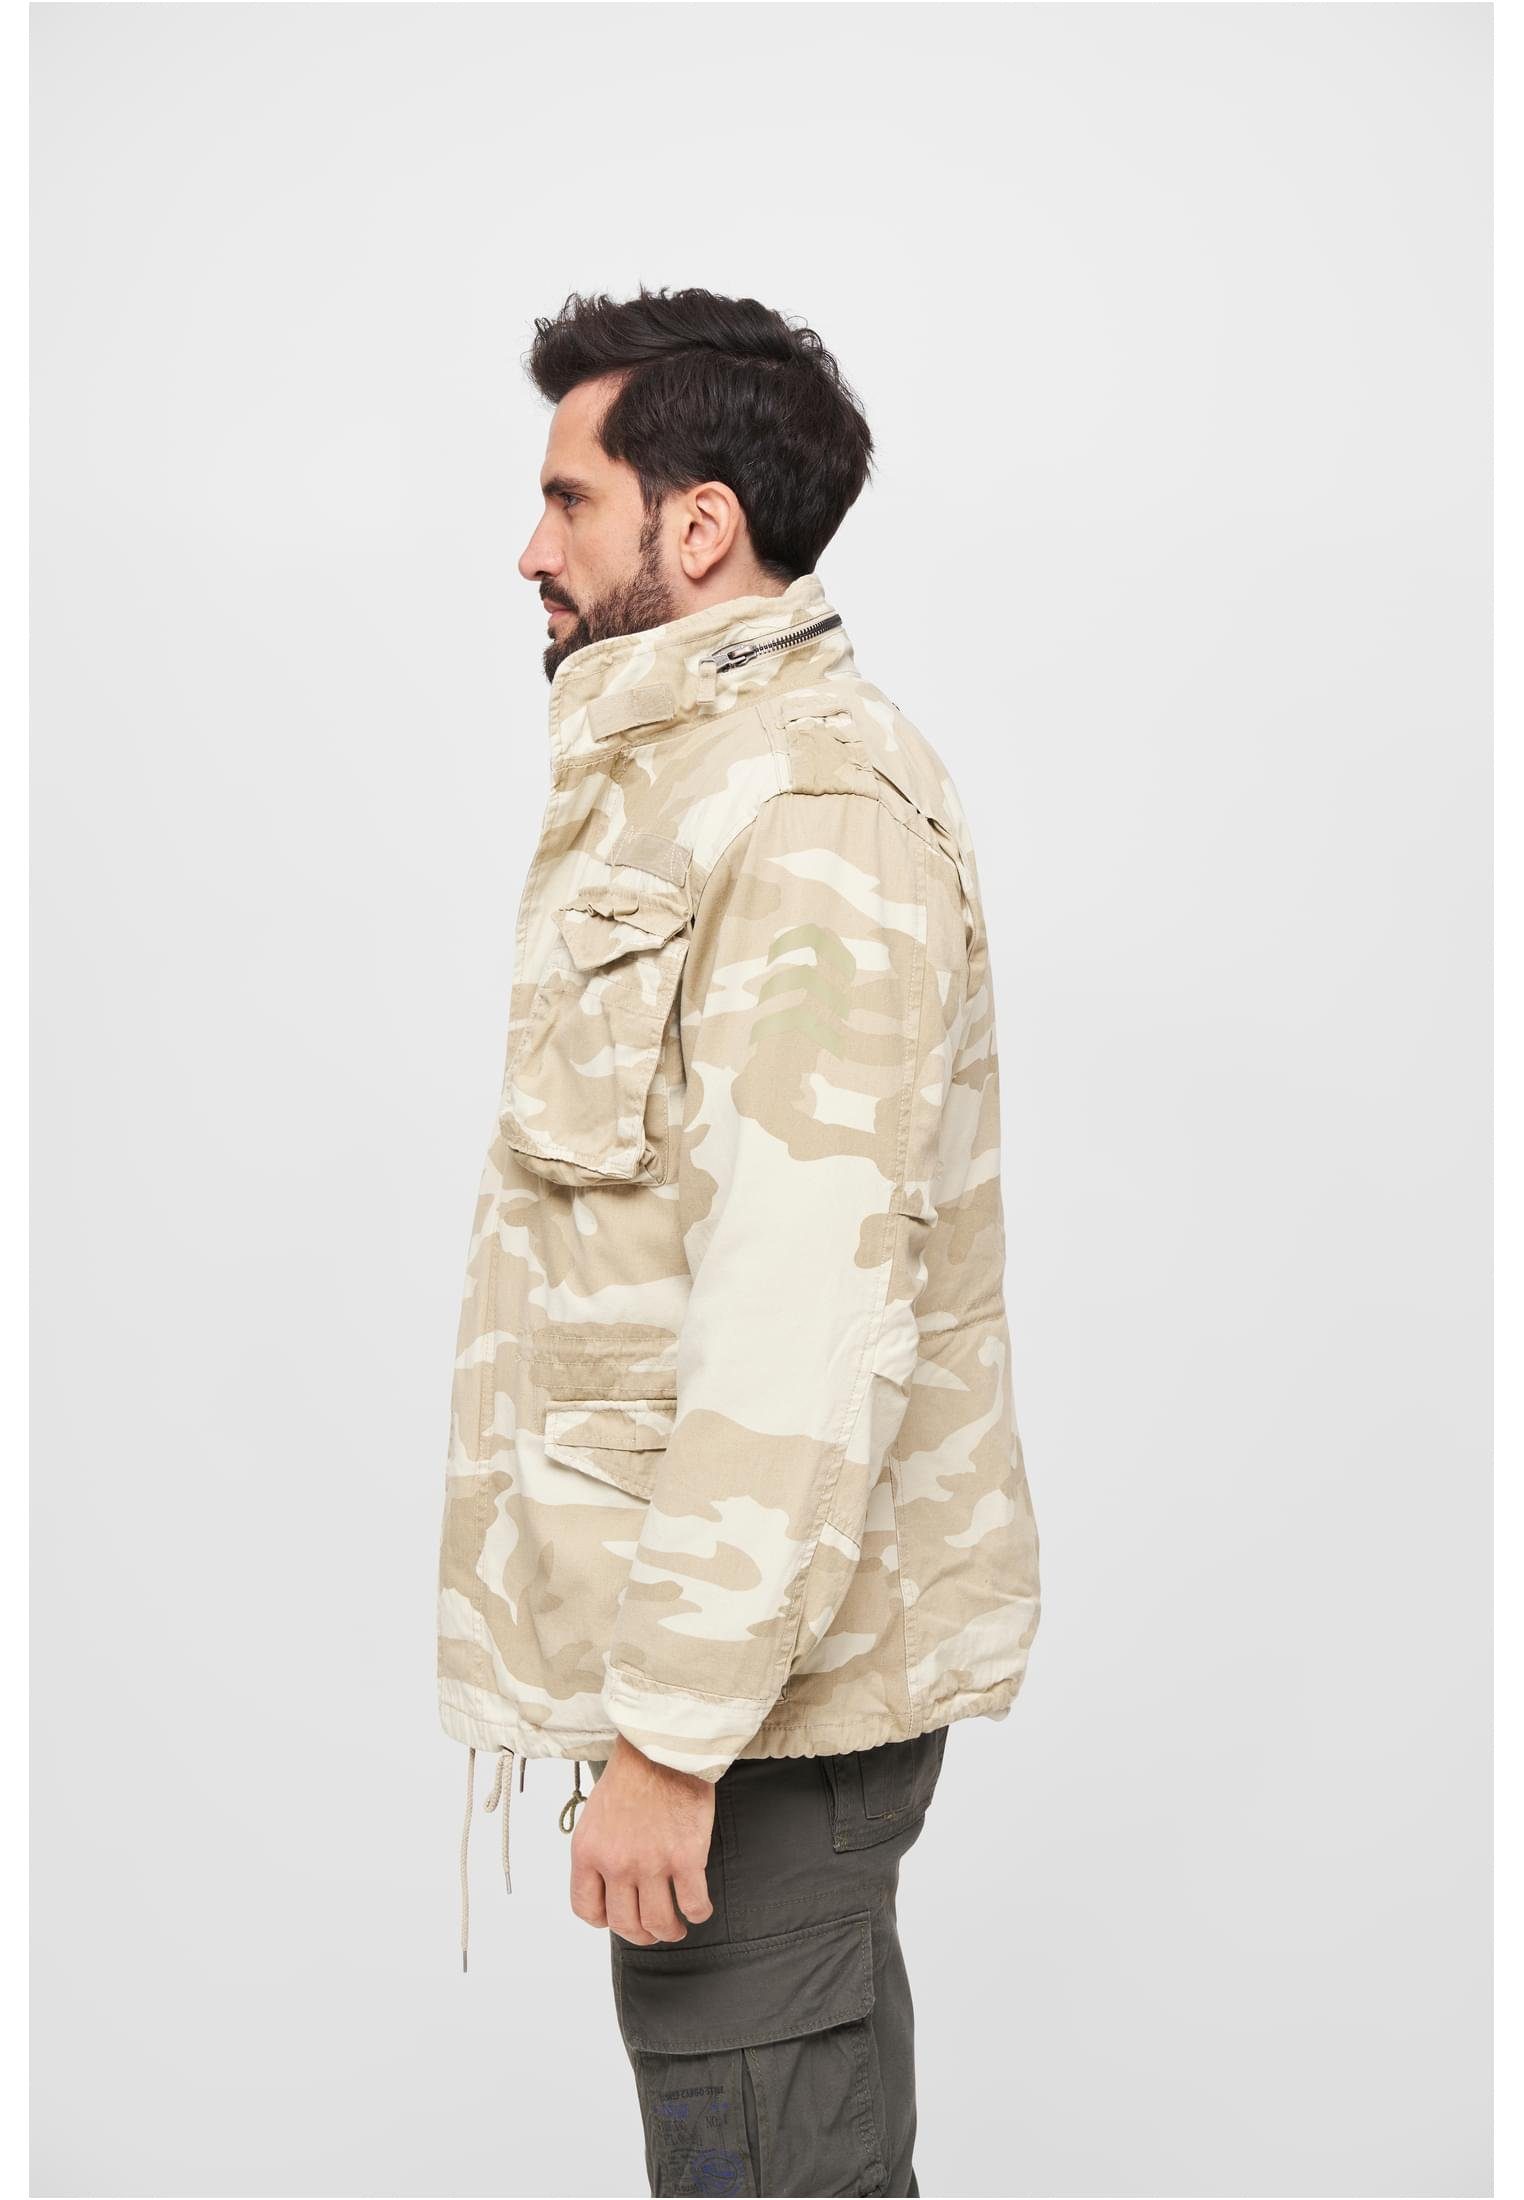 Brandit Giant Wintermantel Jacket Herren sand camouflage M-65